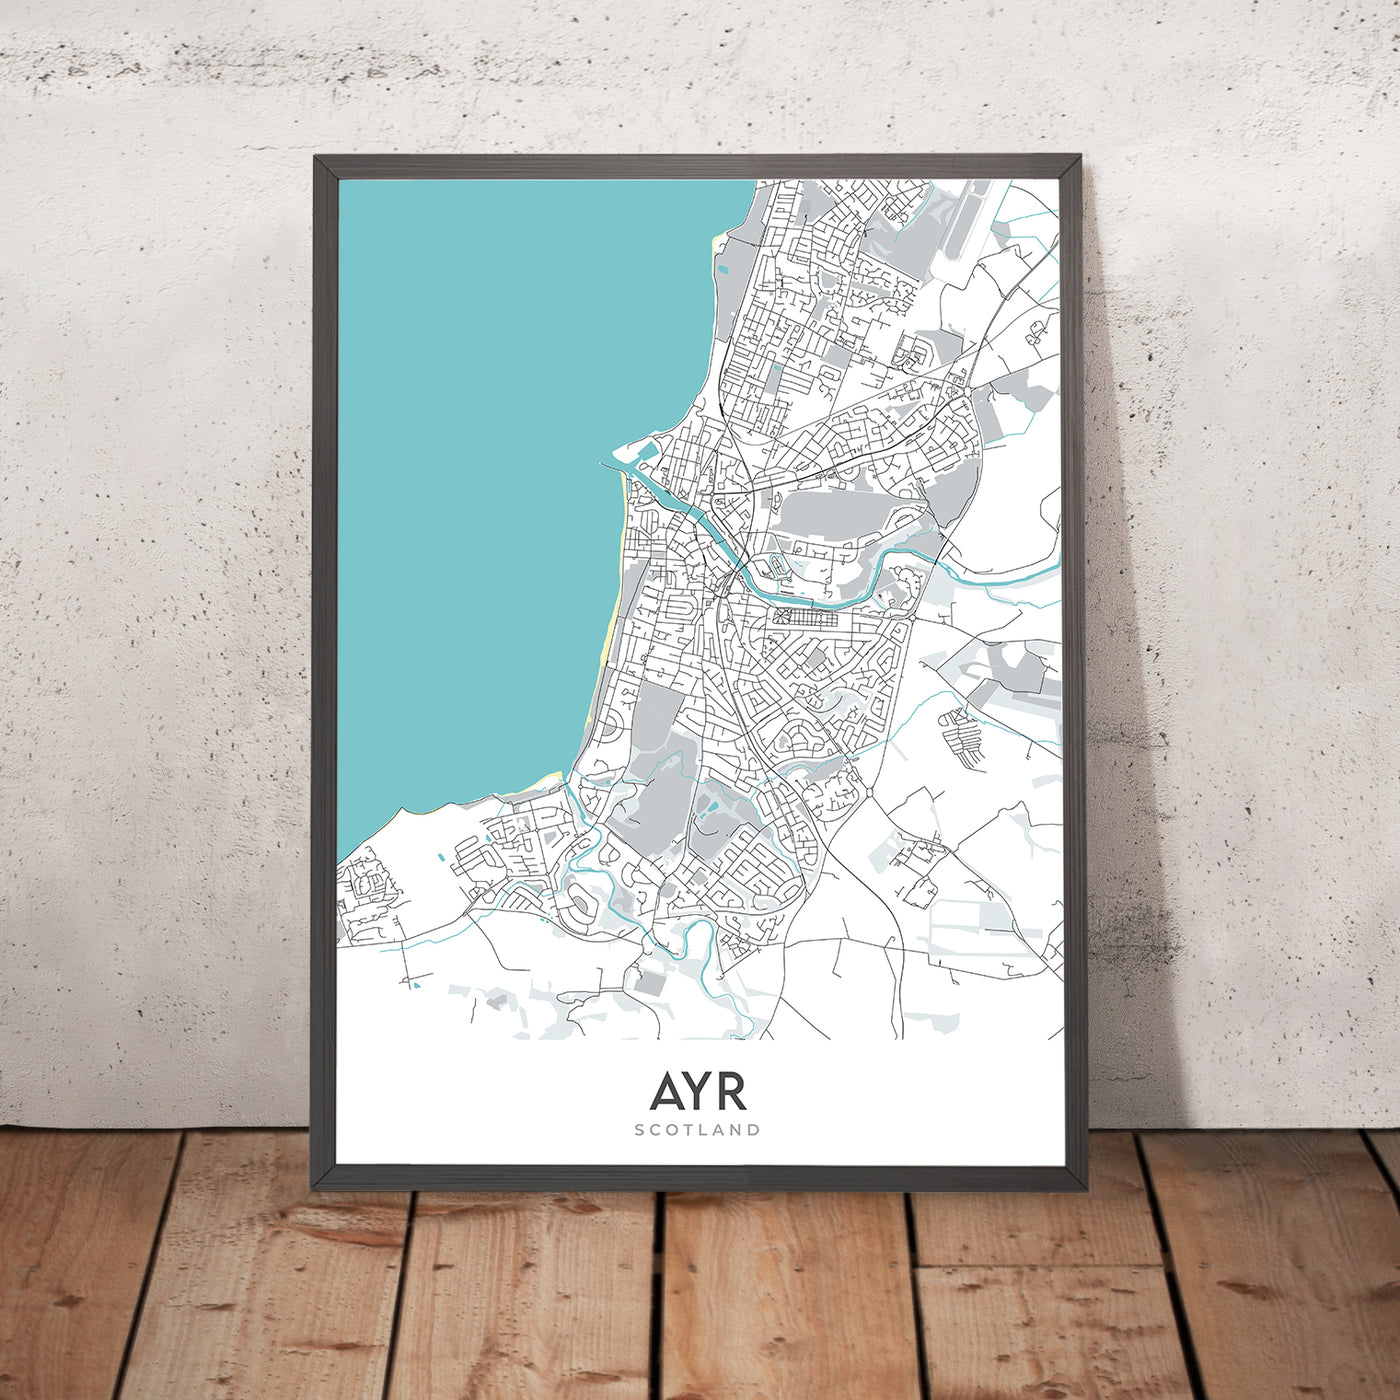 Plan de la ville moderne d'Ayr, Écosse : centre-ville, plage d'Ayr, rivière Ayr, A77, hippodrome